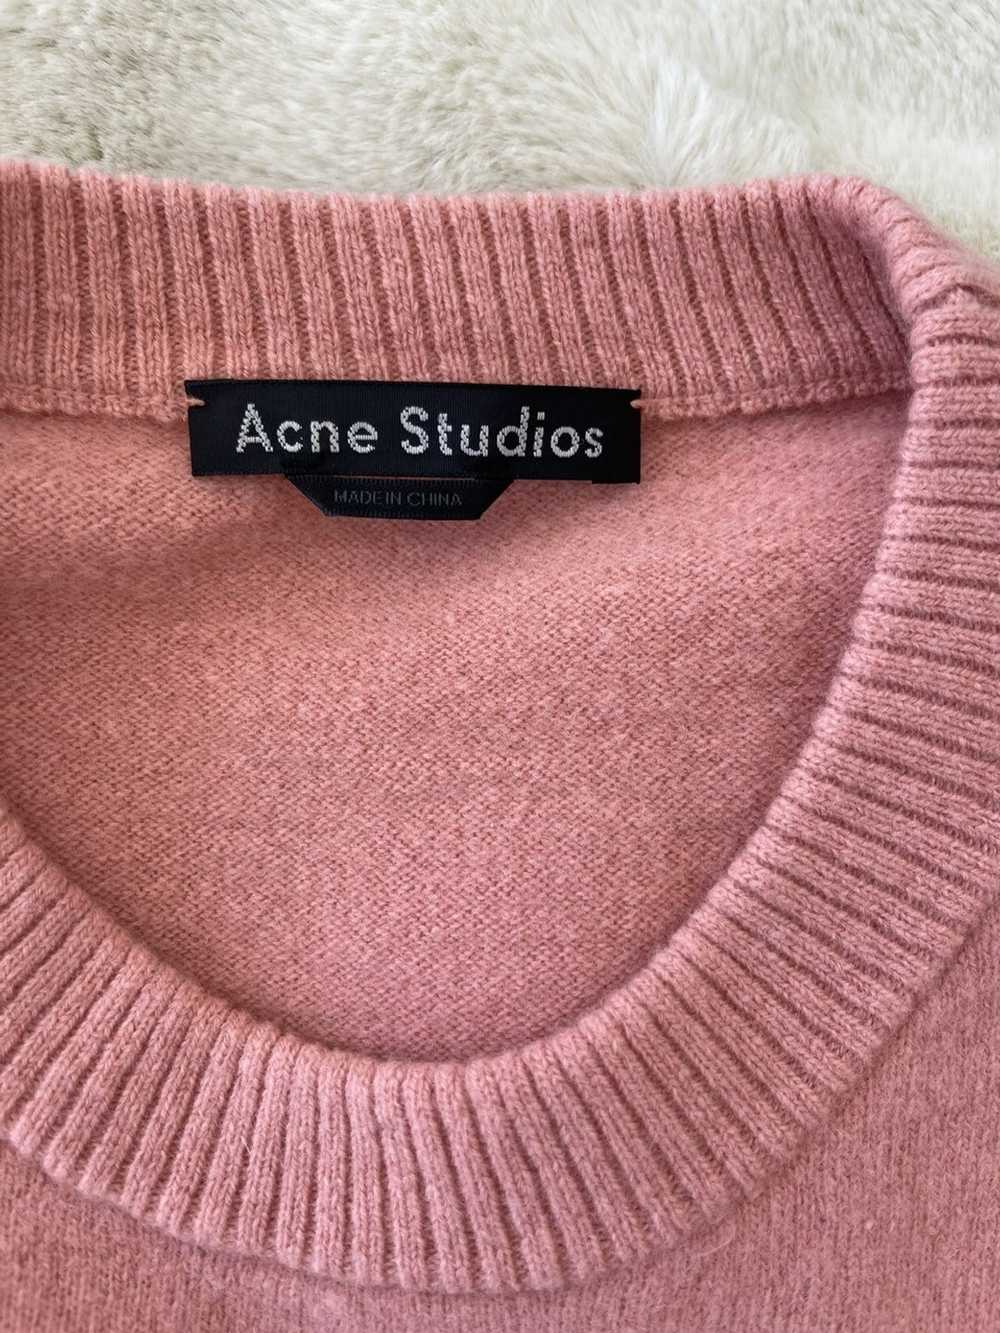 Acne Studios Acne Atudios sweatshirt unisex - image 4